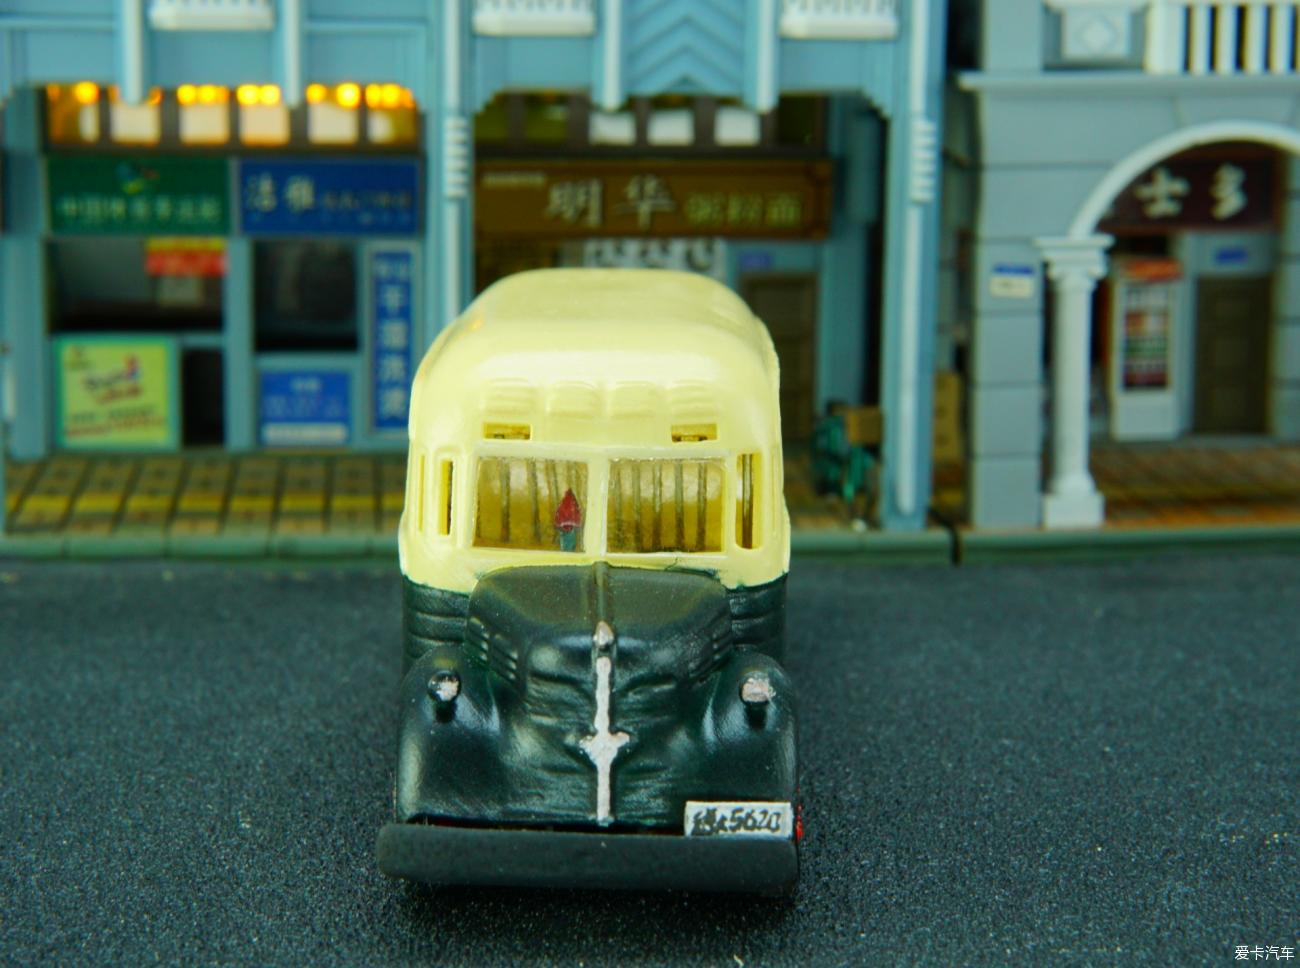 1952广州巴士道奇火柴盒1：76手版模型